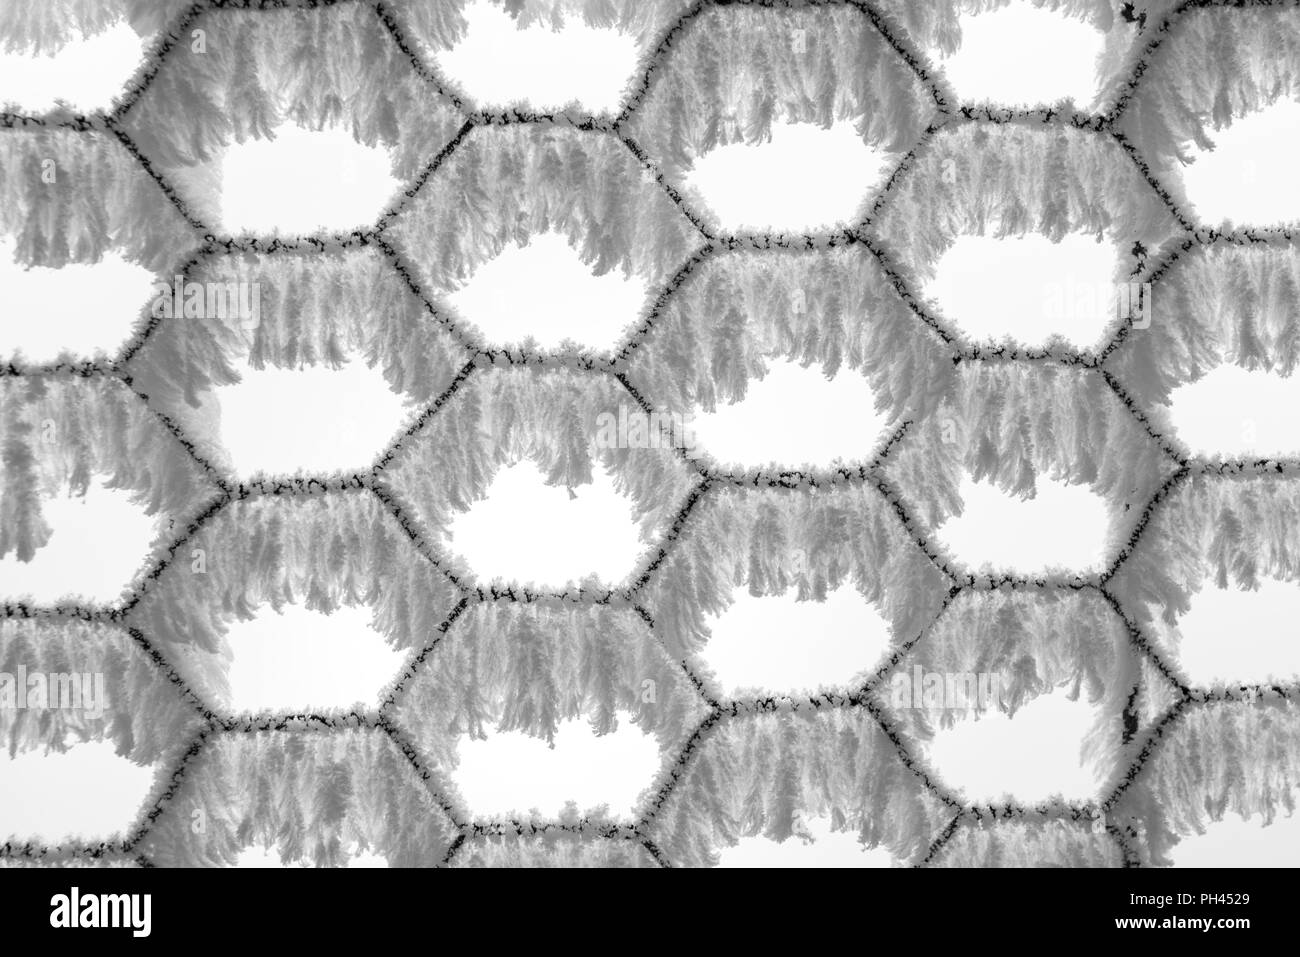 Closeup B&W Bild von Raureif auf einem chainlink fence Stockfoto